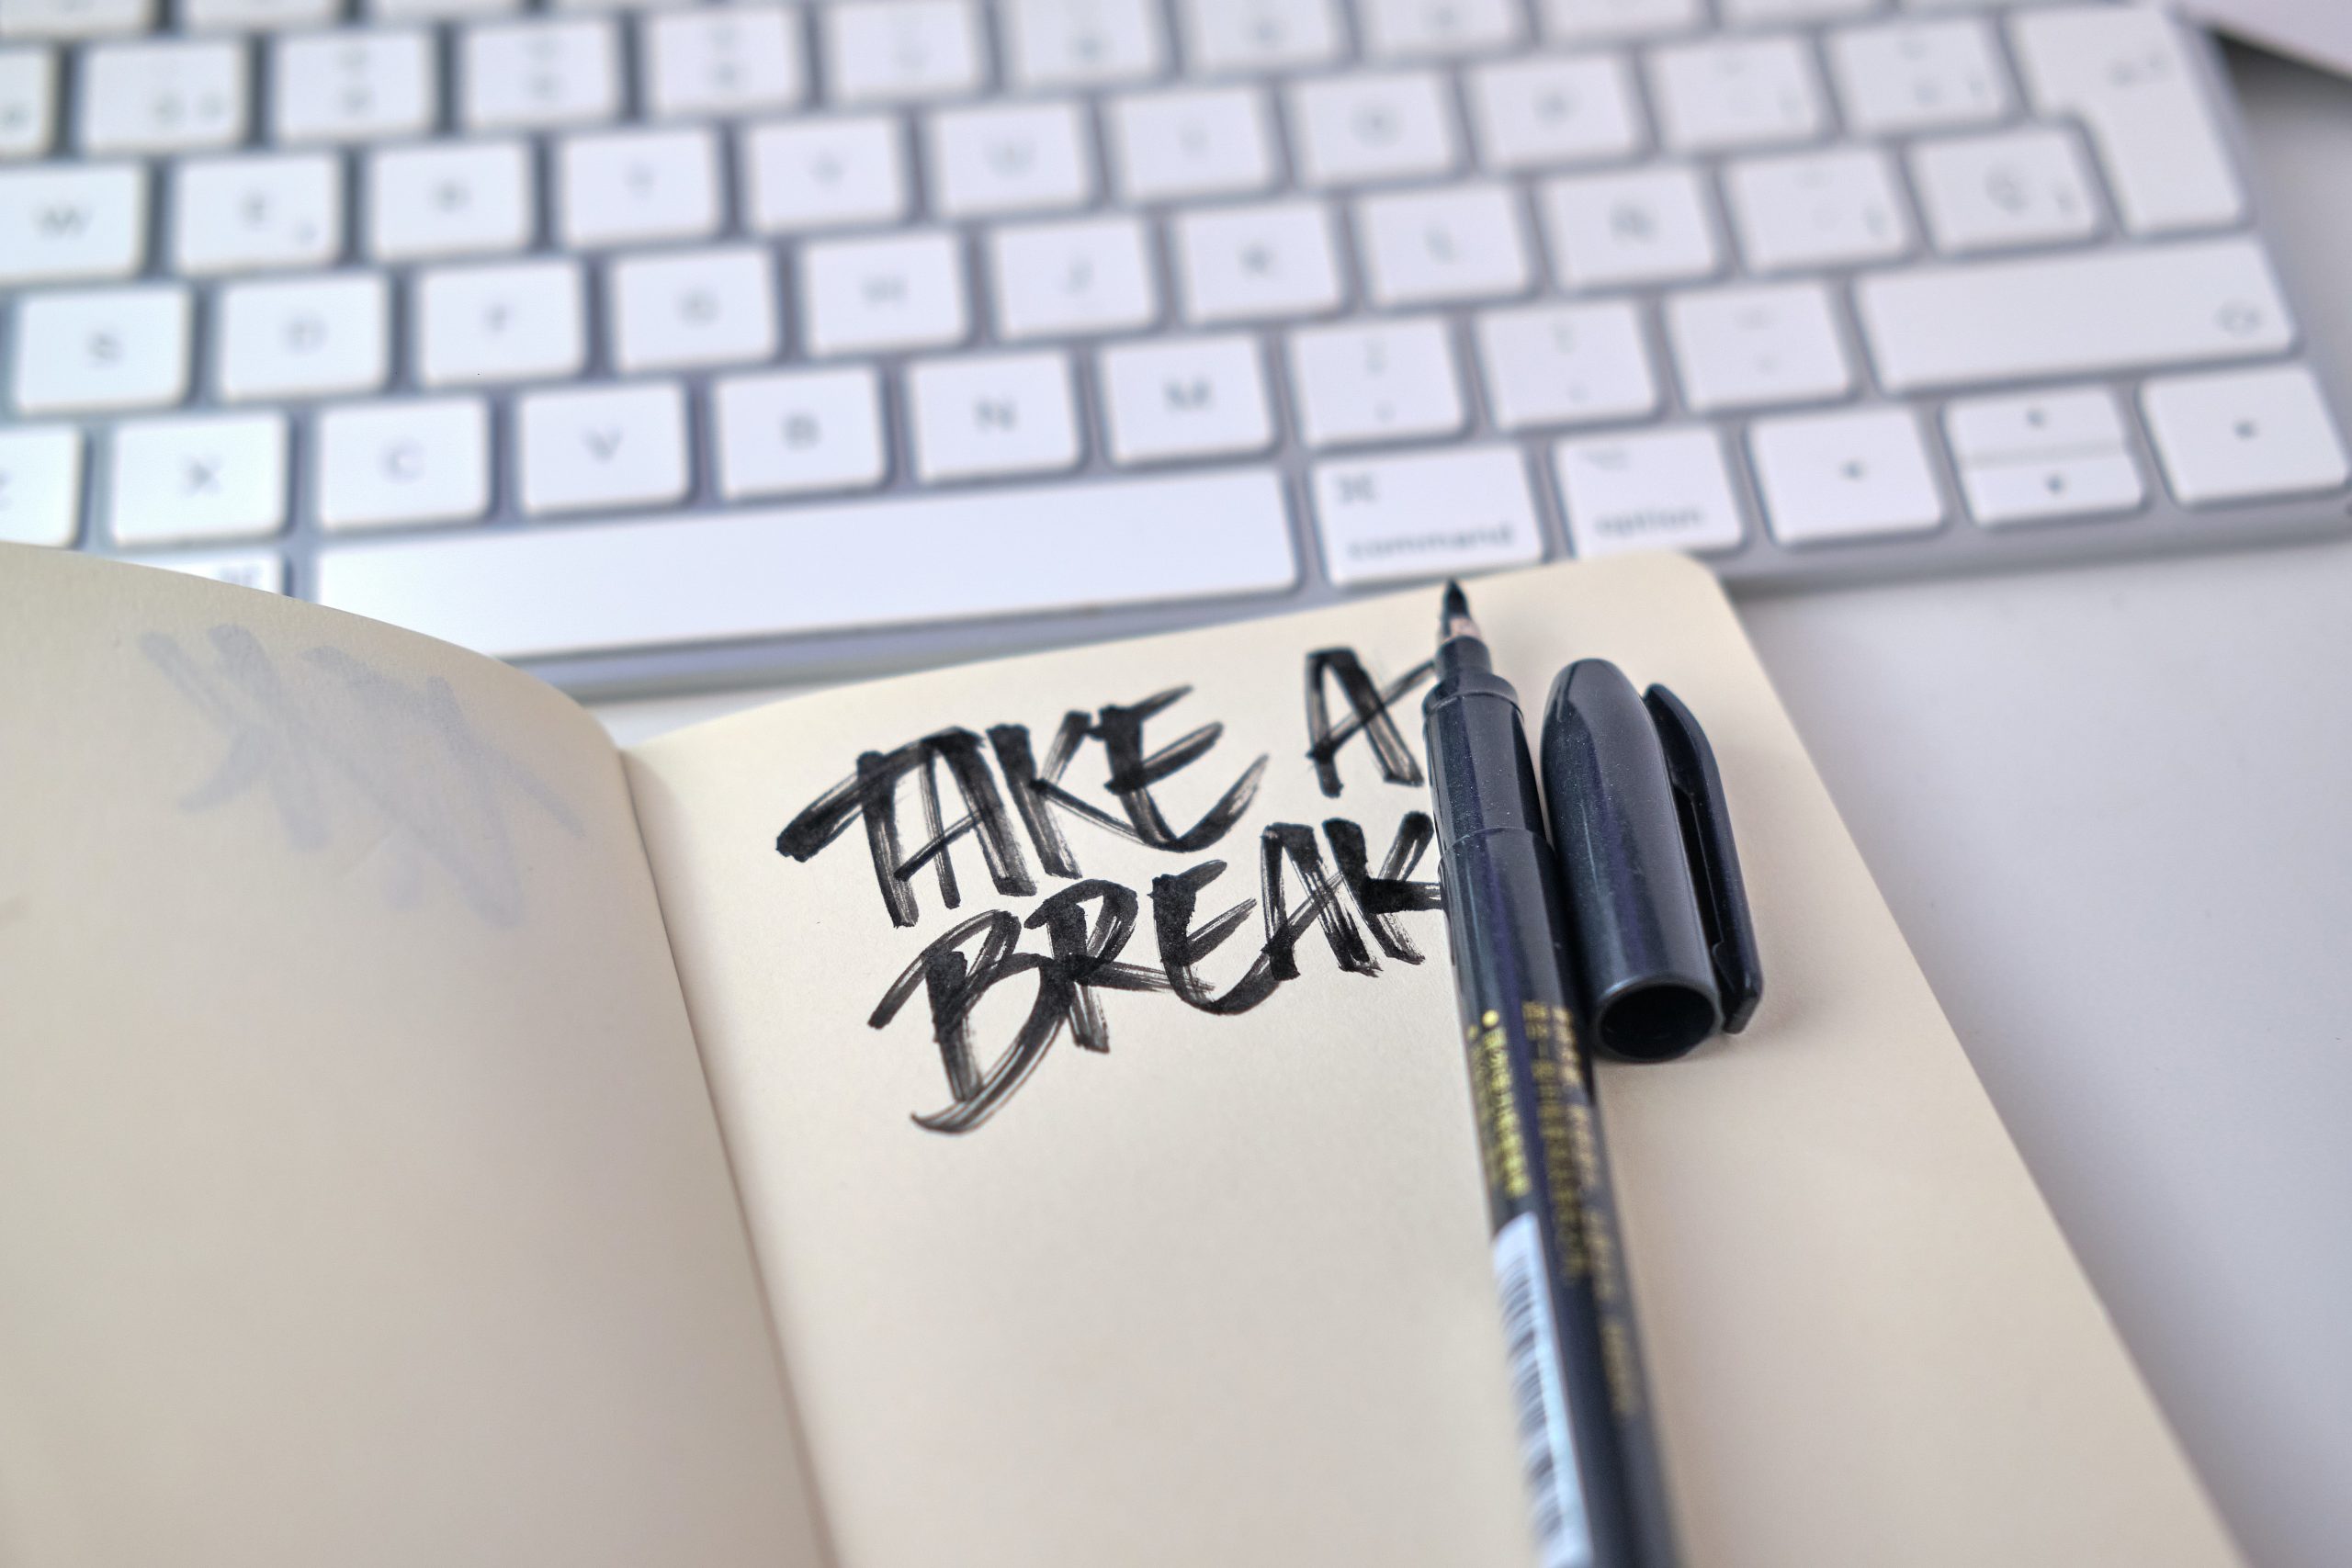 Take a Break note on desk